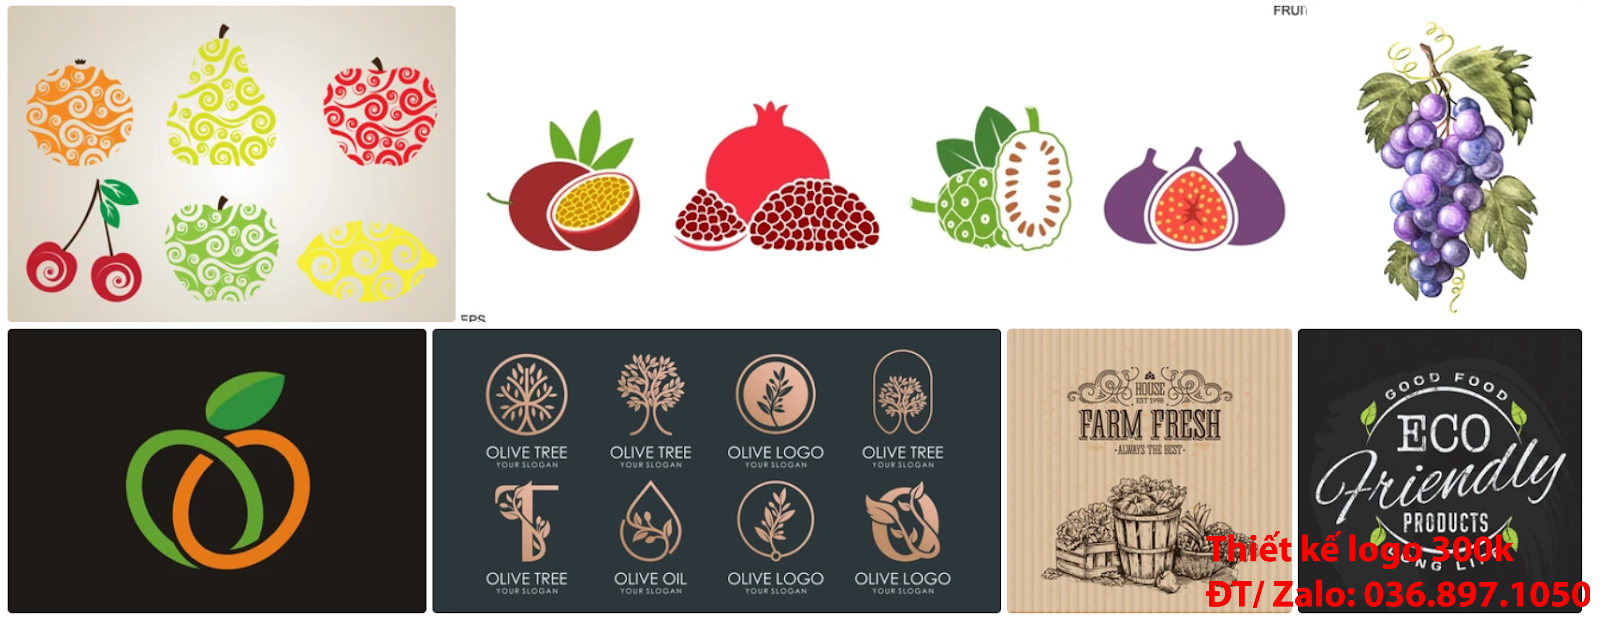 Đơn vị cung cấp dịch vụ làm Mẫu logo trái cây đơn giản tinh tế đẹp giá rẻ 300k - 500k uy tín chất lượng